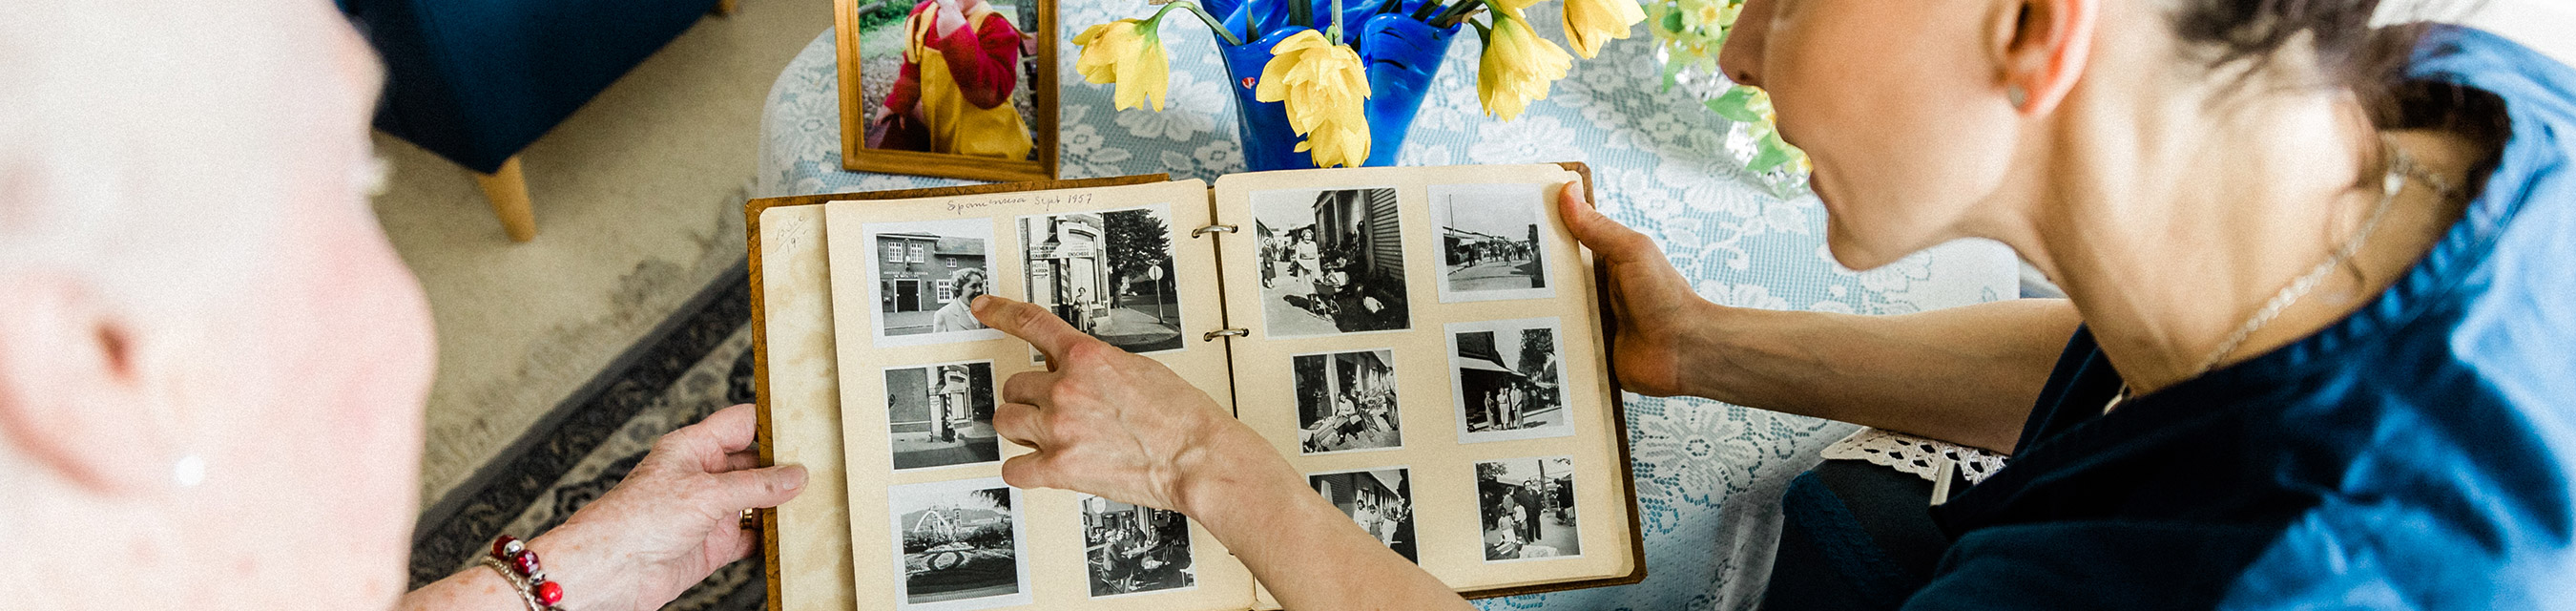 Trygghet
kan vara många saker – som att minnas det som varit genom att titta i gamla
fotoalbum tillsammans.